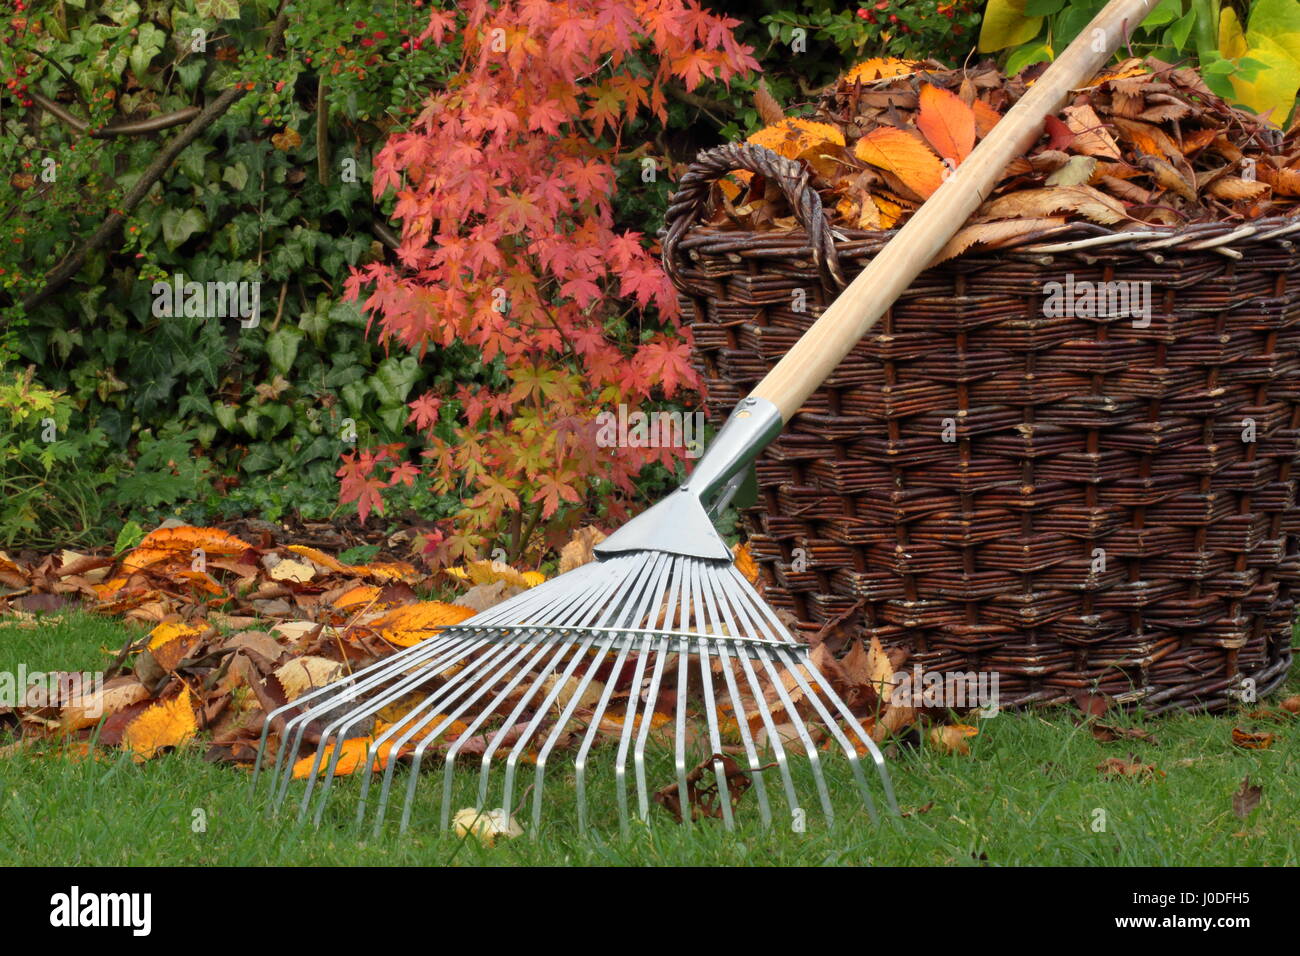 Abgefallene Blätter wurden an einem hellen Herbsttag von einem Gartenrasen in einen gewebten Korb geräumt Stockfoto